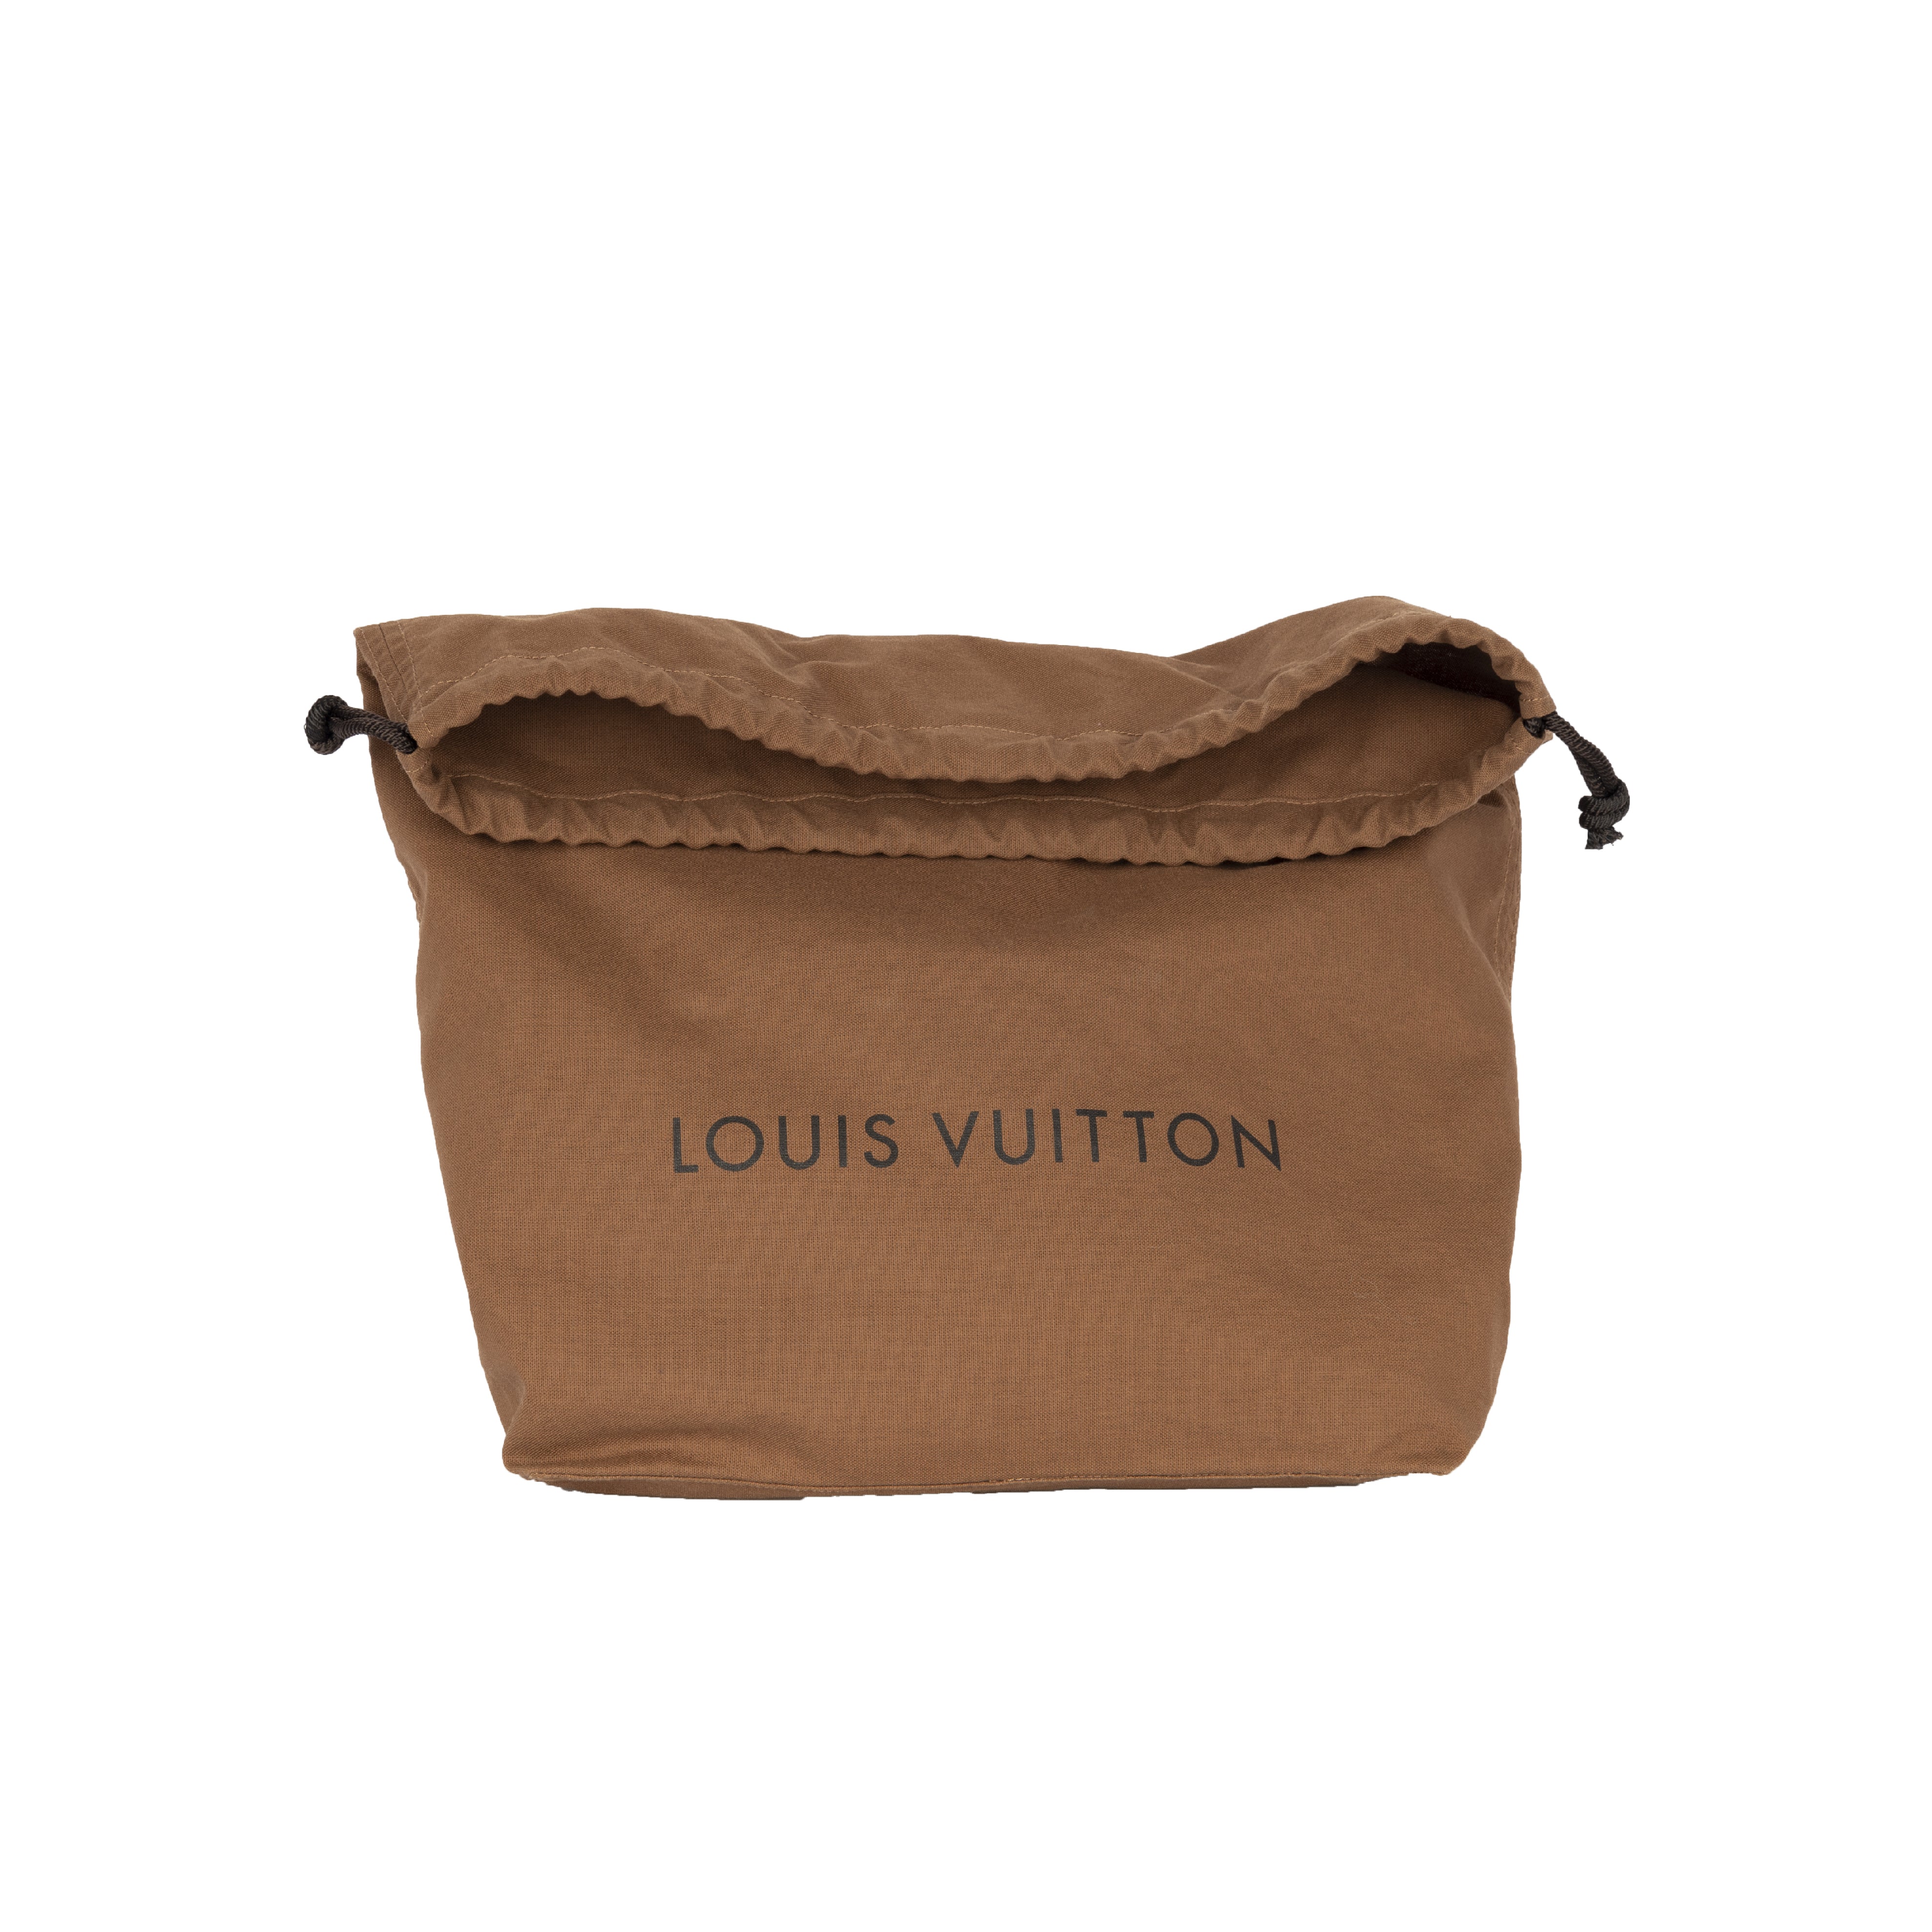 Louis Vuitton Comme des Garçons Laser-Cut Tote Bag